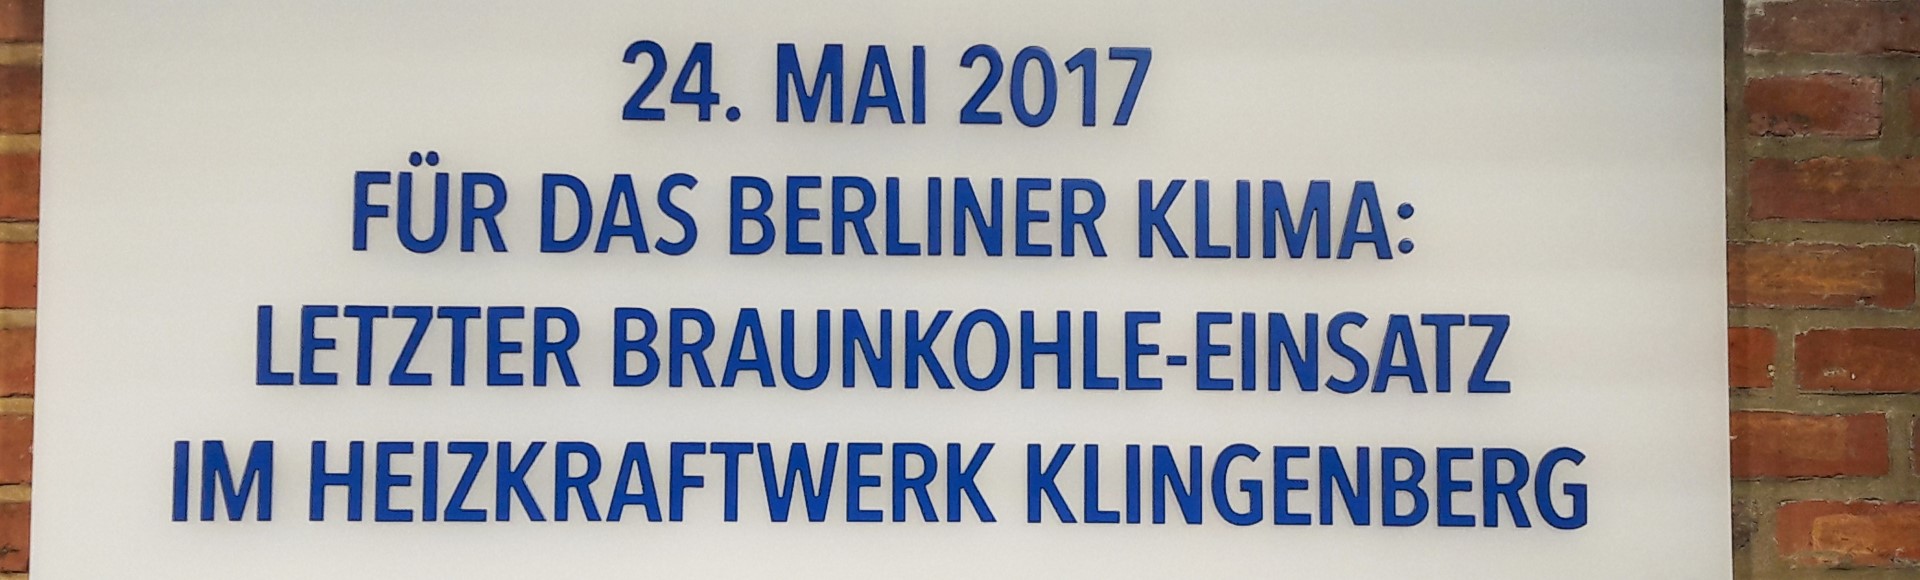 Tafel zum Braunkohleausstieg Klingenberg